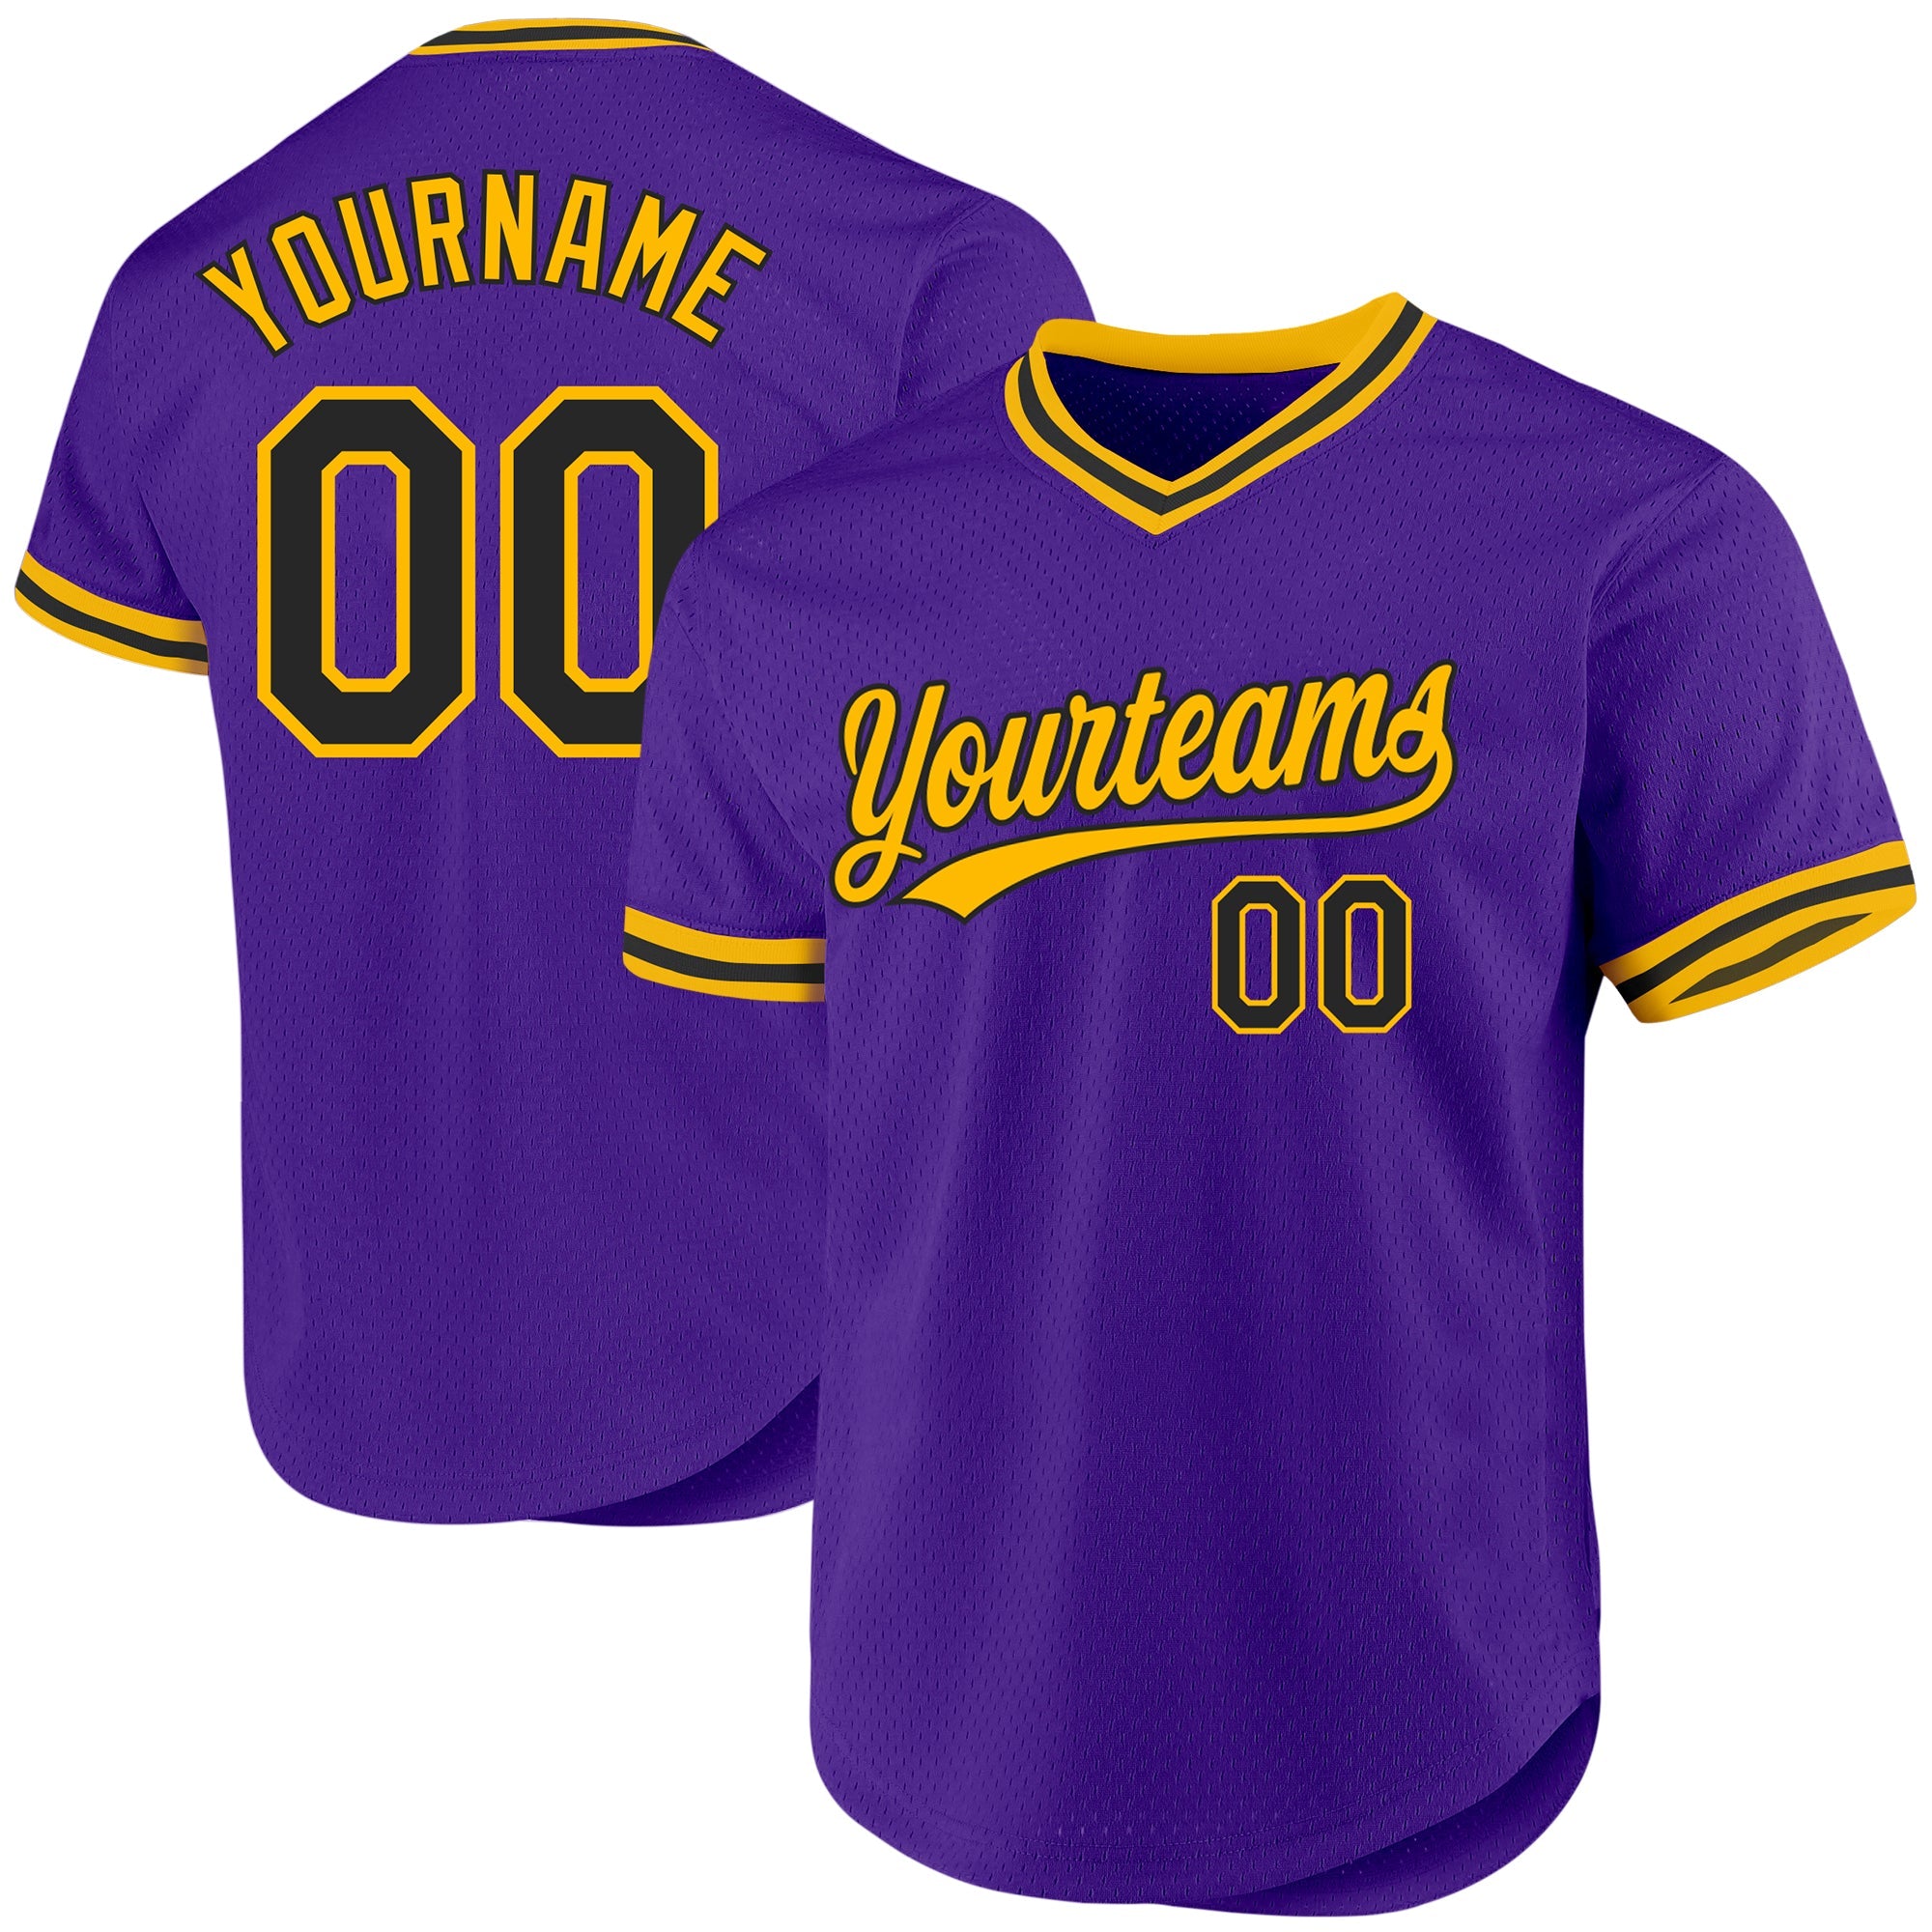 Jerseys de béisbol auténticos negros púrpuras de encargo del retroceso del oro